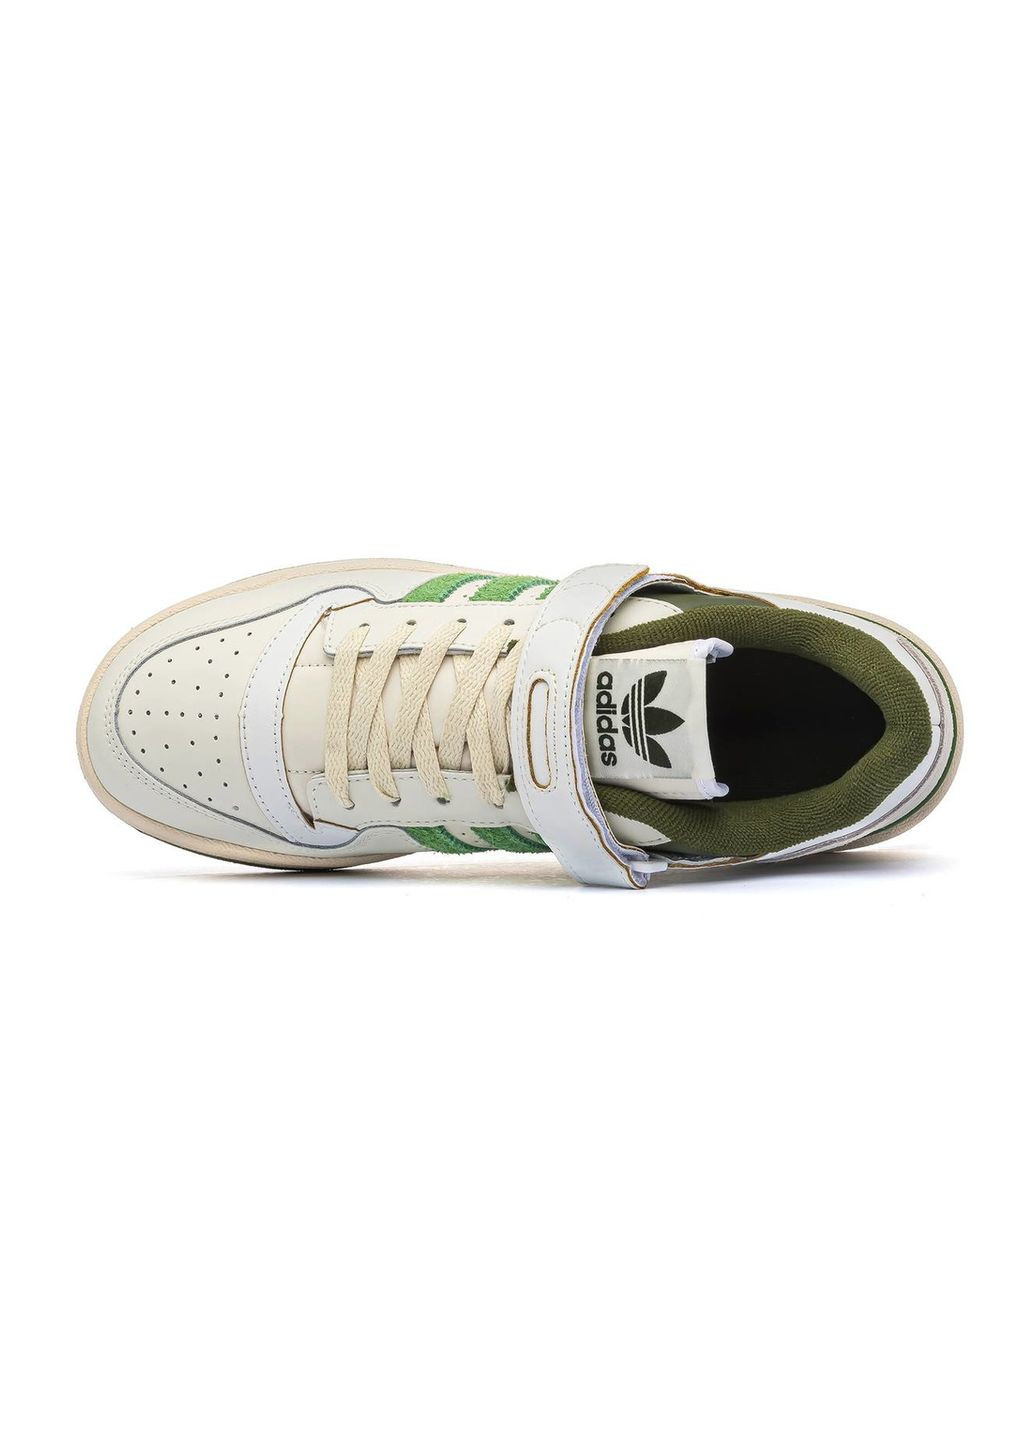 Белые демисезонные кроссовки мужские low crew green, вьетнам adidas Forum 84